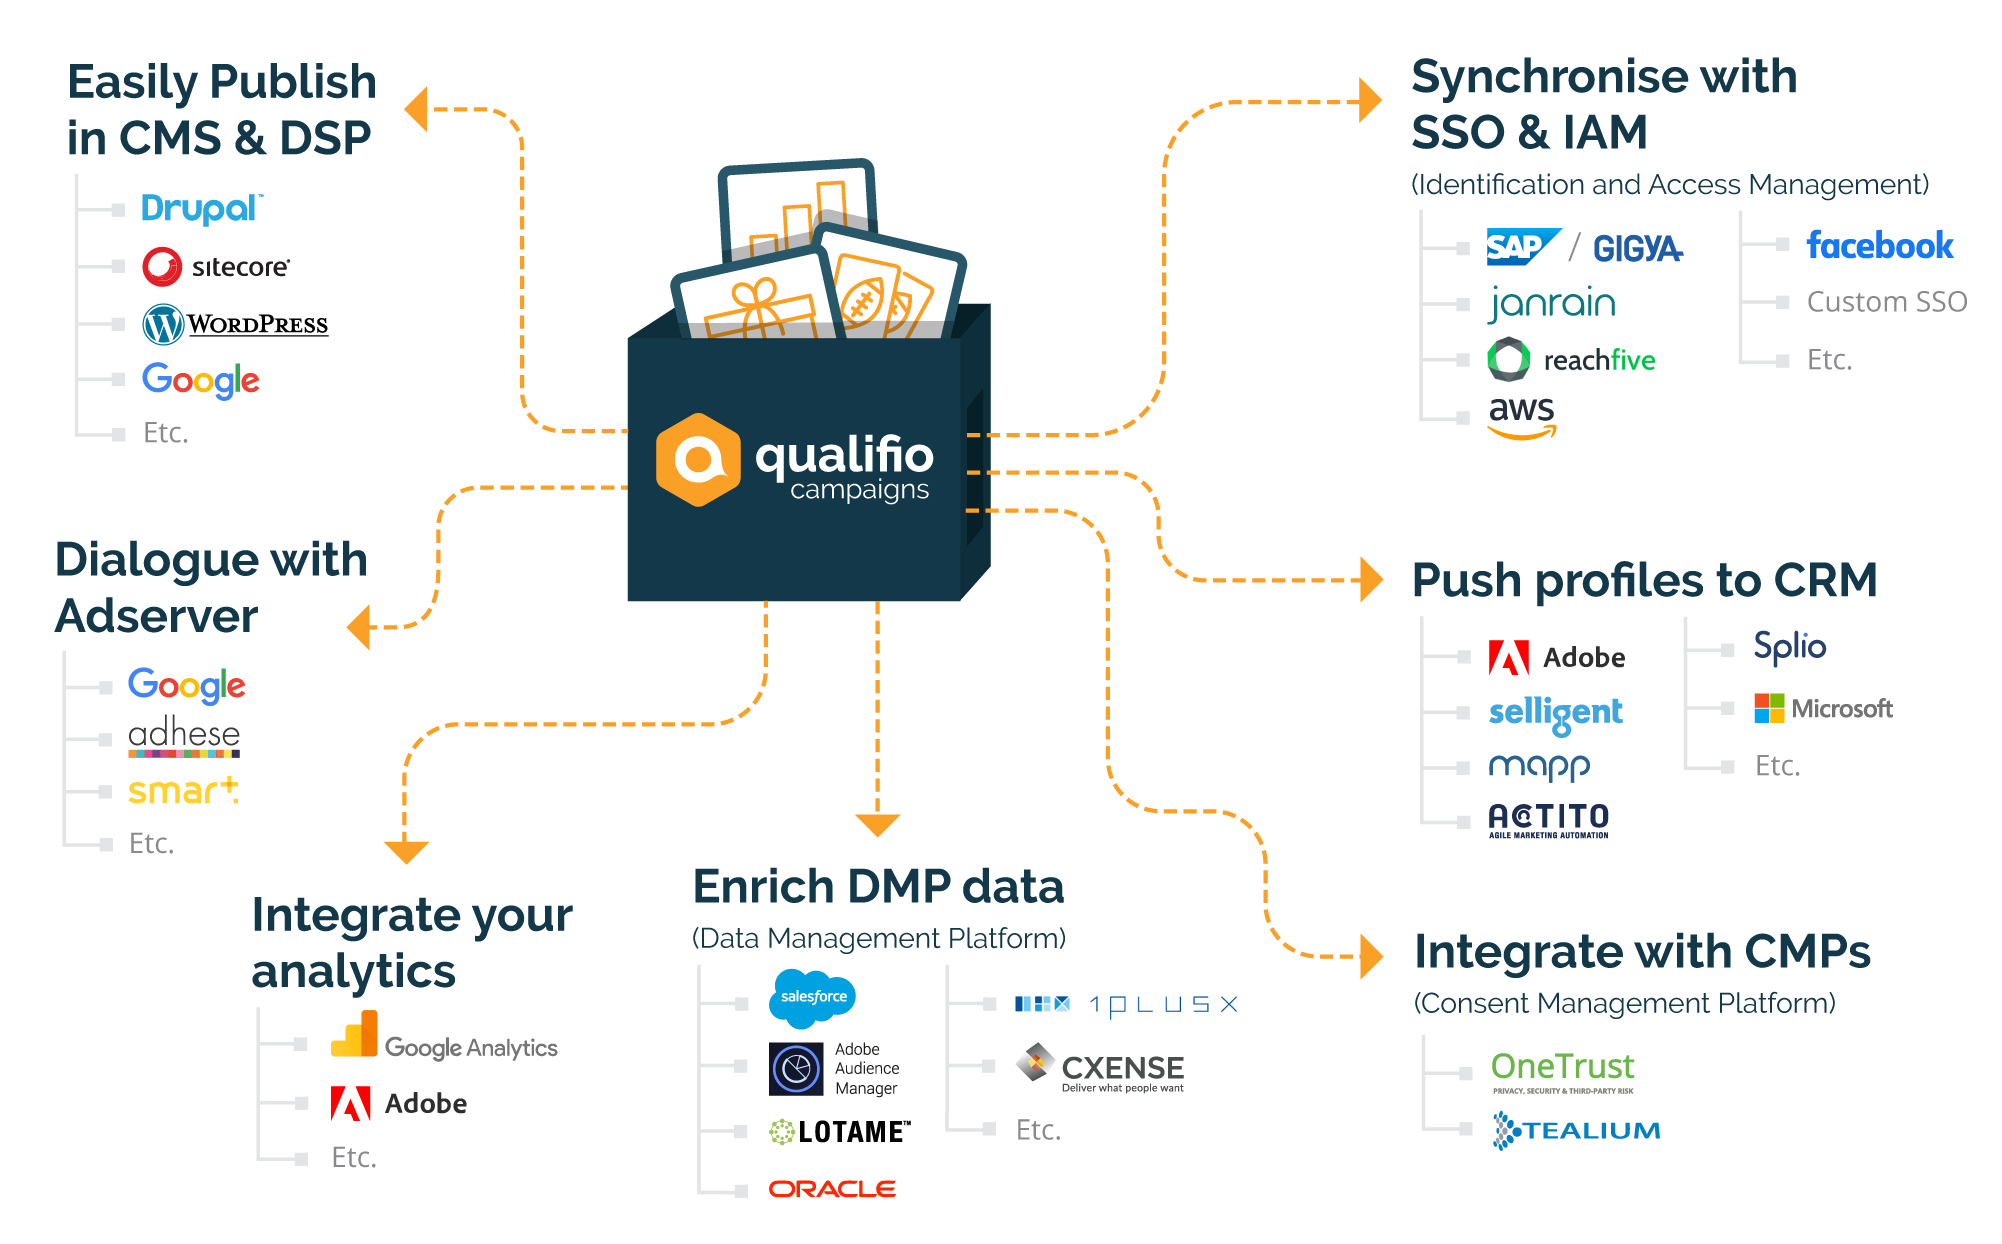 qualifio-campaigns